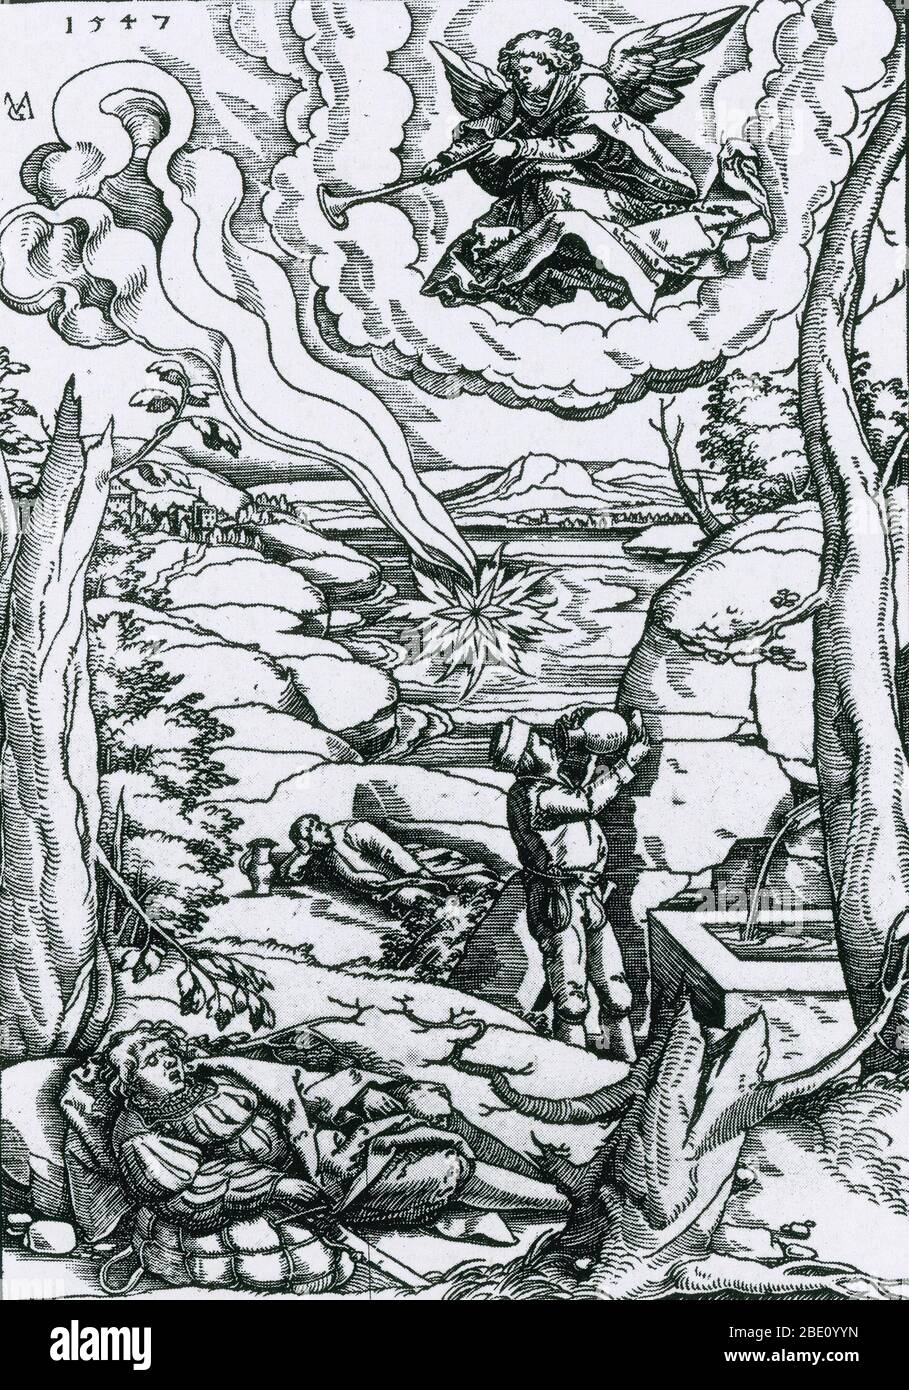 Matthias Gerung, Apokalypse Illustration, 1547, Holzschnitt. Dieser Druck zeigt den Stern-Wermut aus Offenbarung 8:10-11: "Und der dritte Engel posaunte, und es fiel ein großer Stern vom Himmel, der brannte wie eine Lampe ... und der Name des Sterns heißt Wermut." Stockfoto